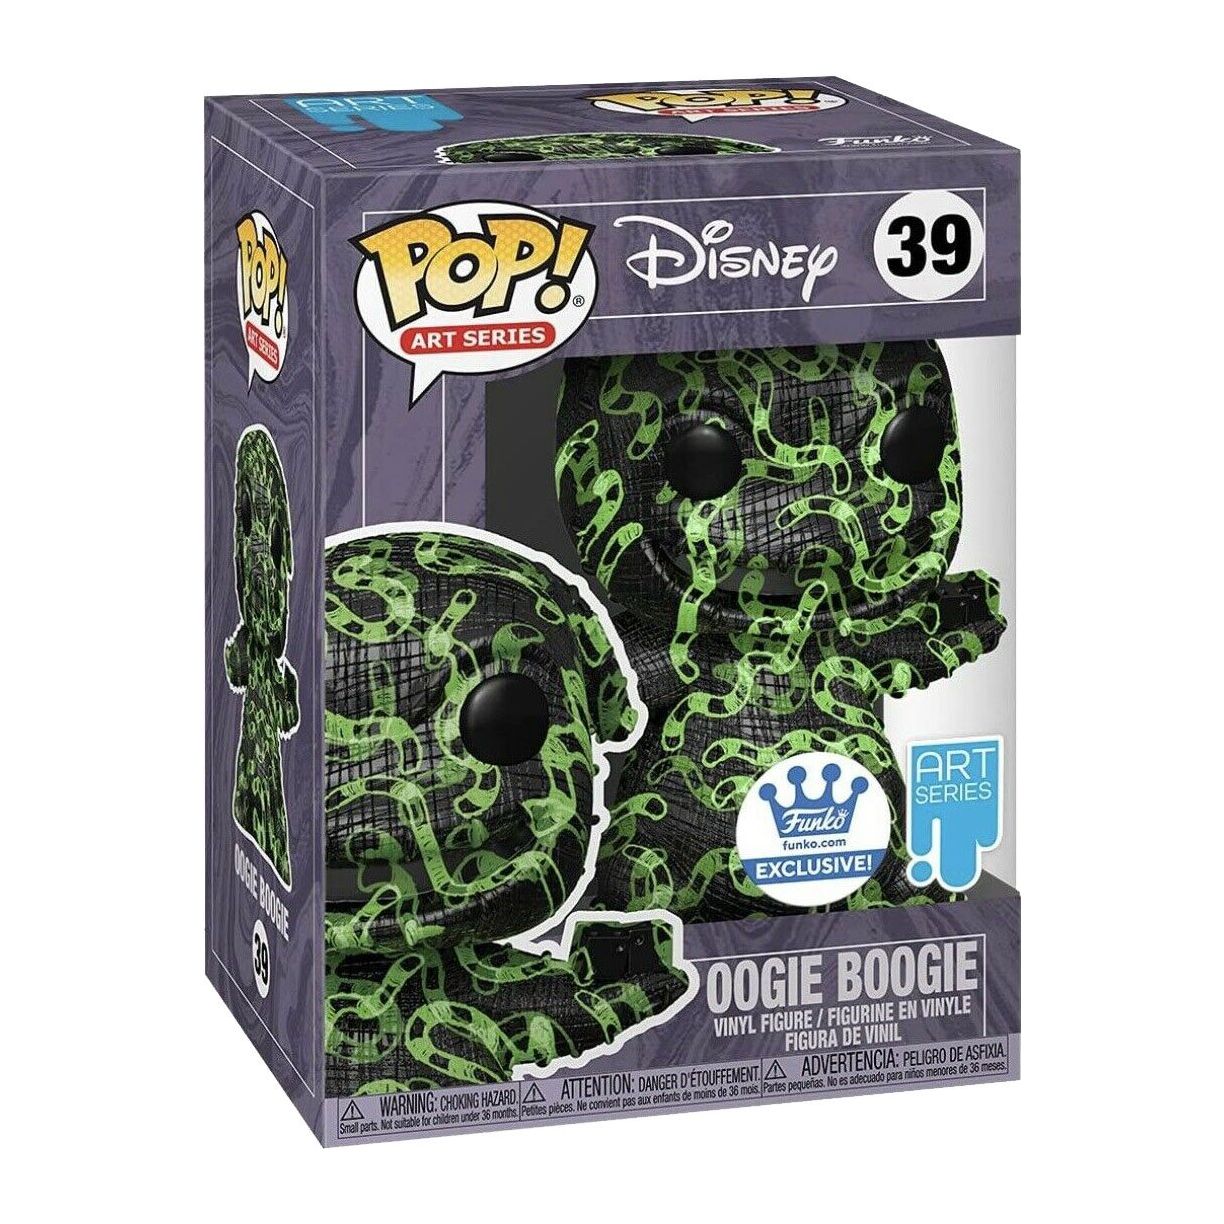 Art Series - Disney - Oogie Boogie - 39 Exclusive